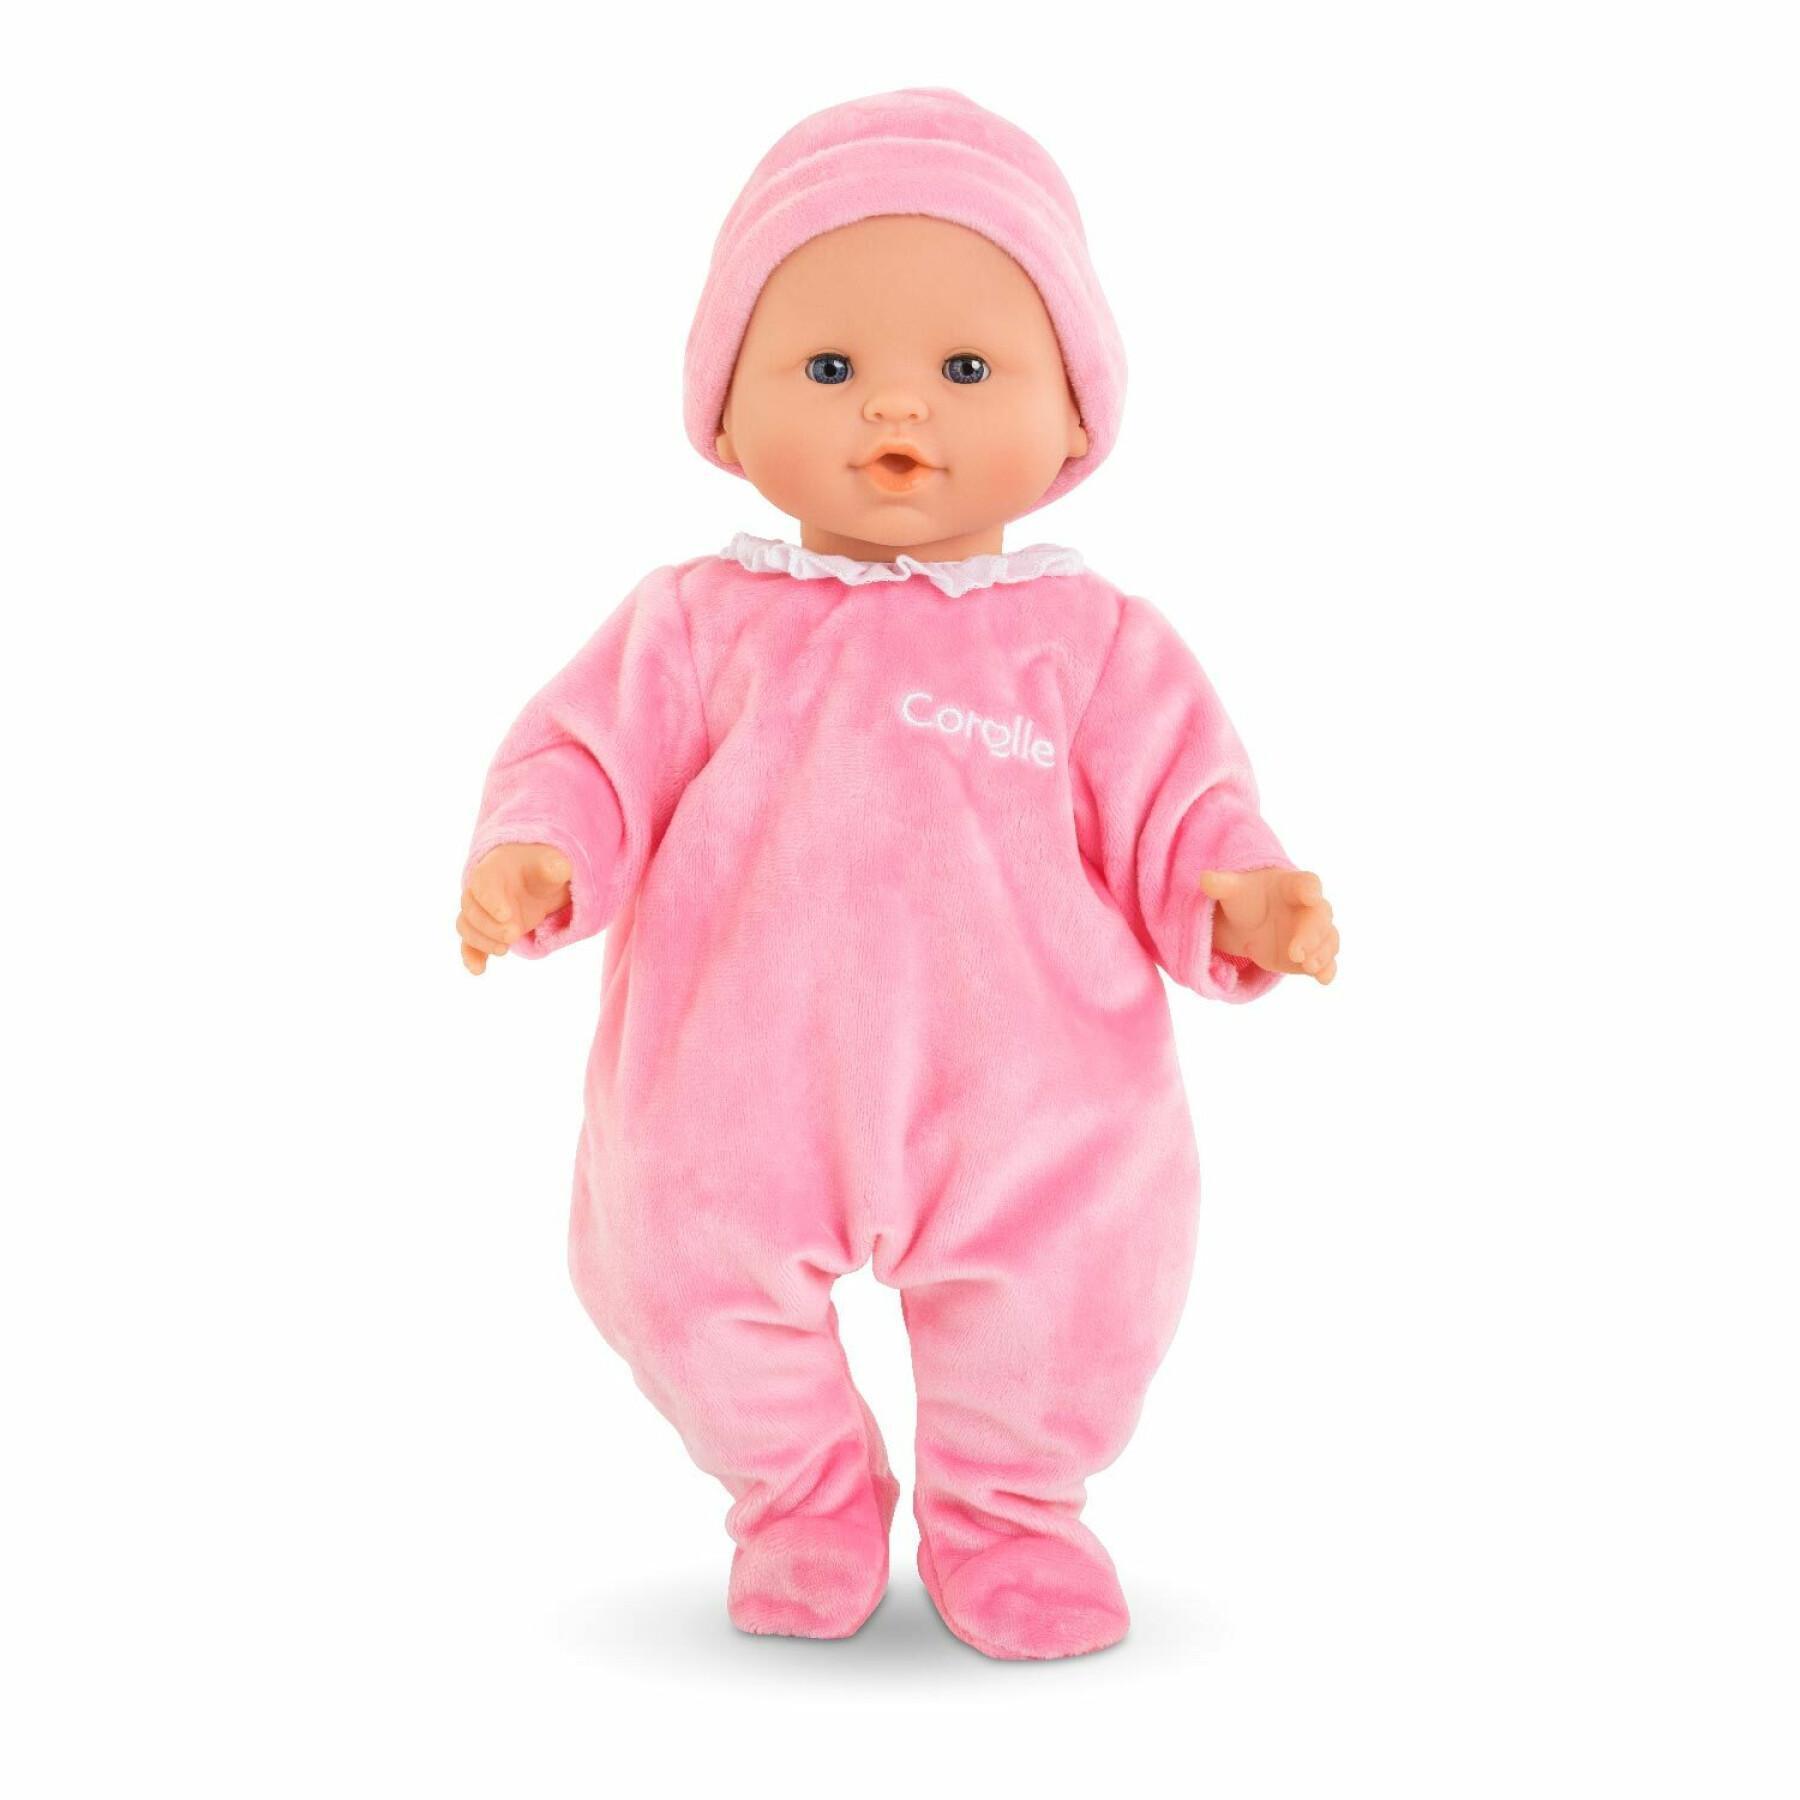 Pijama y gorro para el bebé Corolle